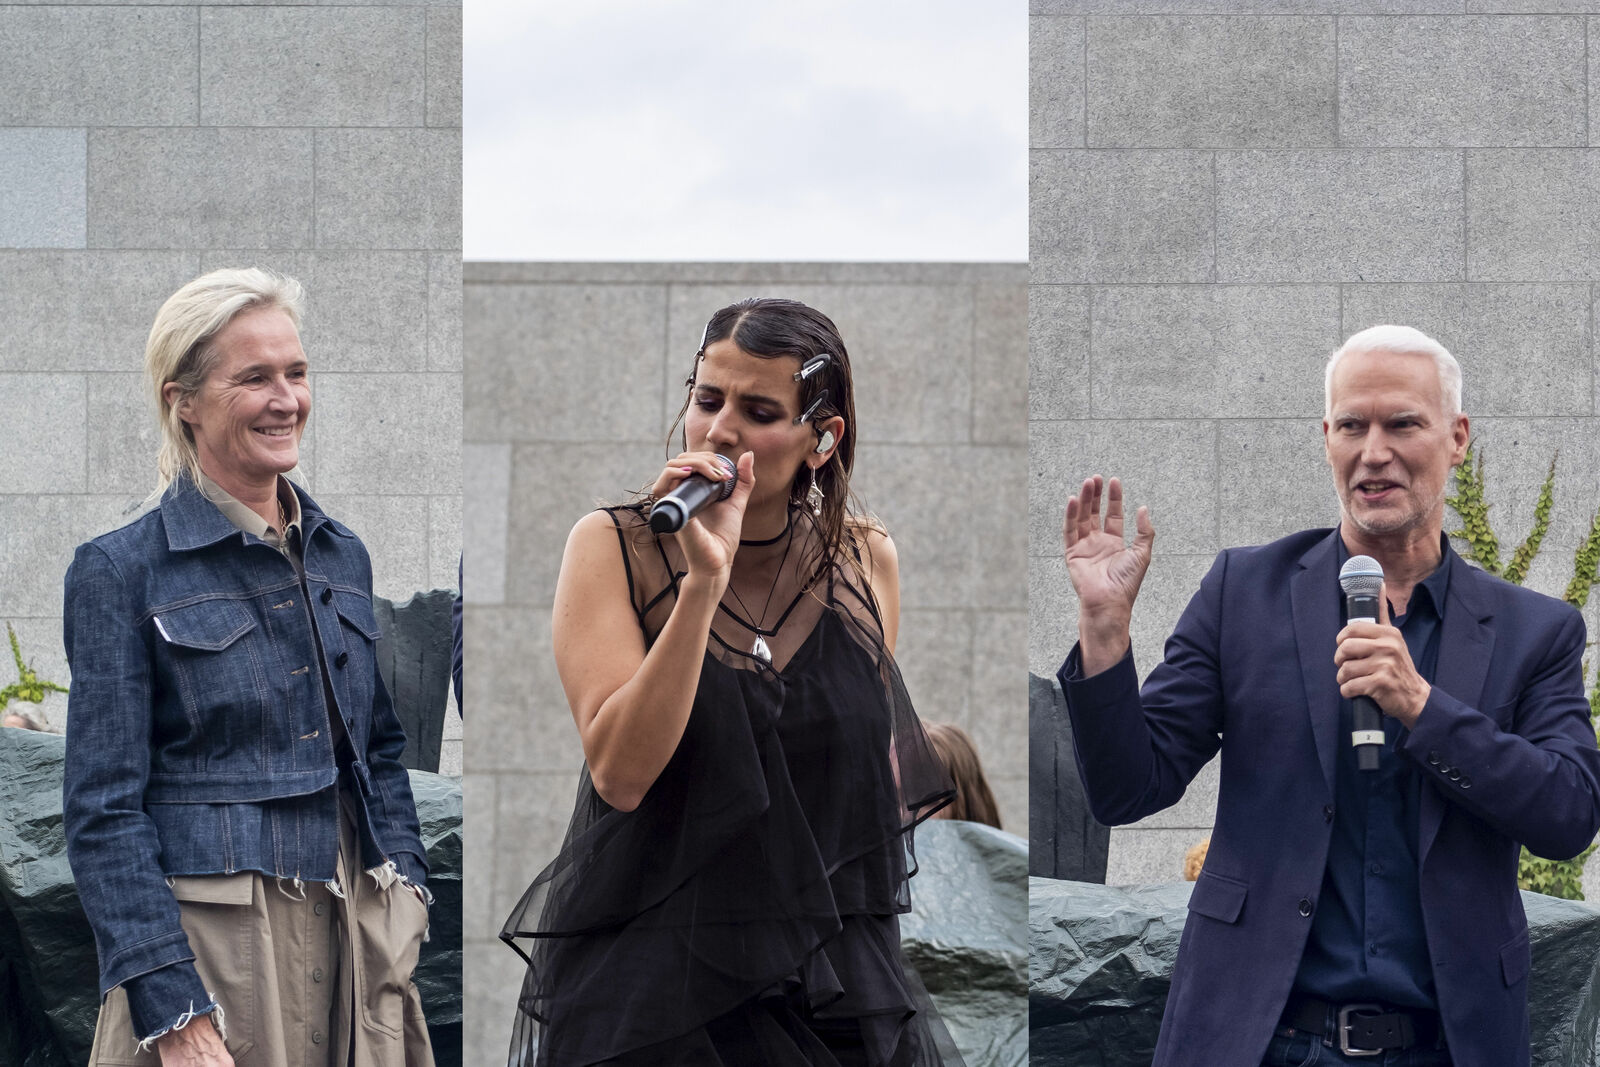 Benita von Maltzahn, Head of Volkswagen Cultural Engagement and NNG Director Klaus Biesenbach opend the concert with the artist MARYAM